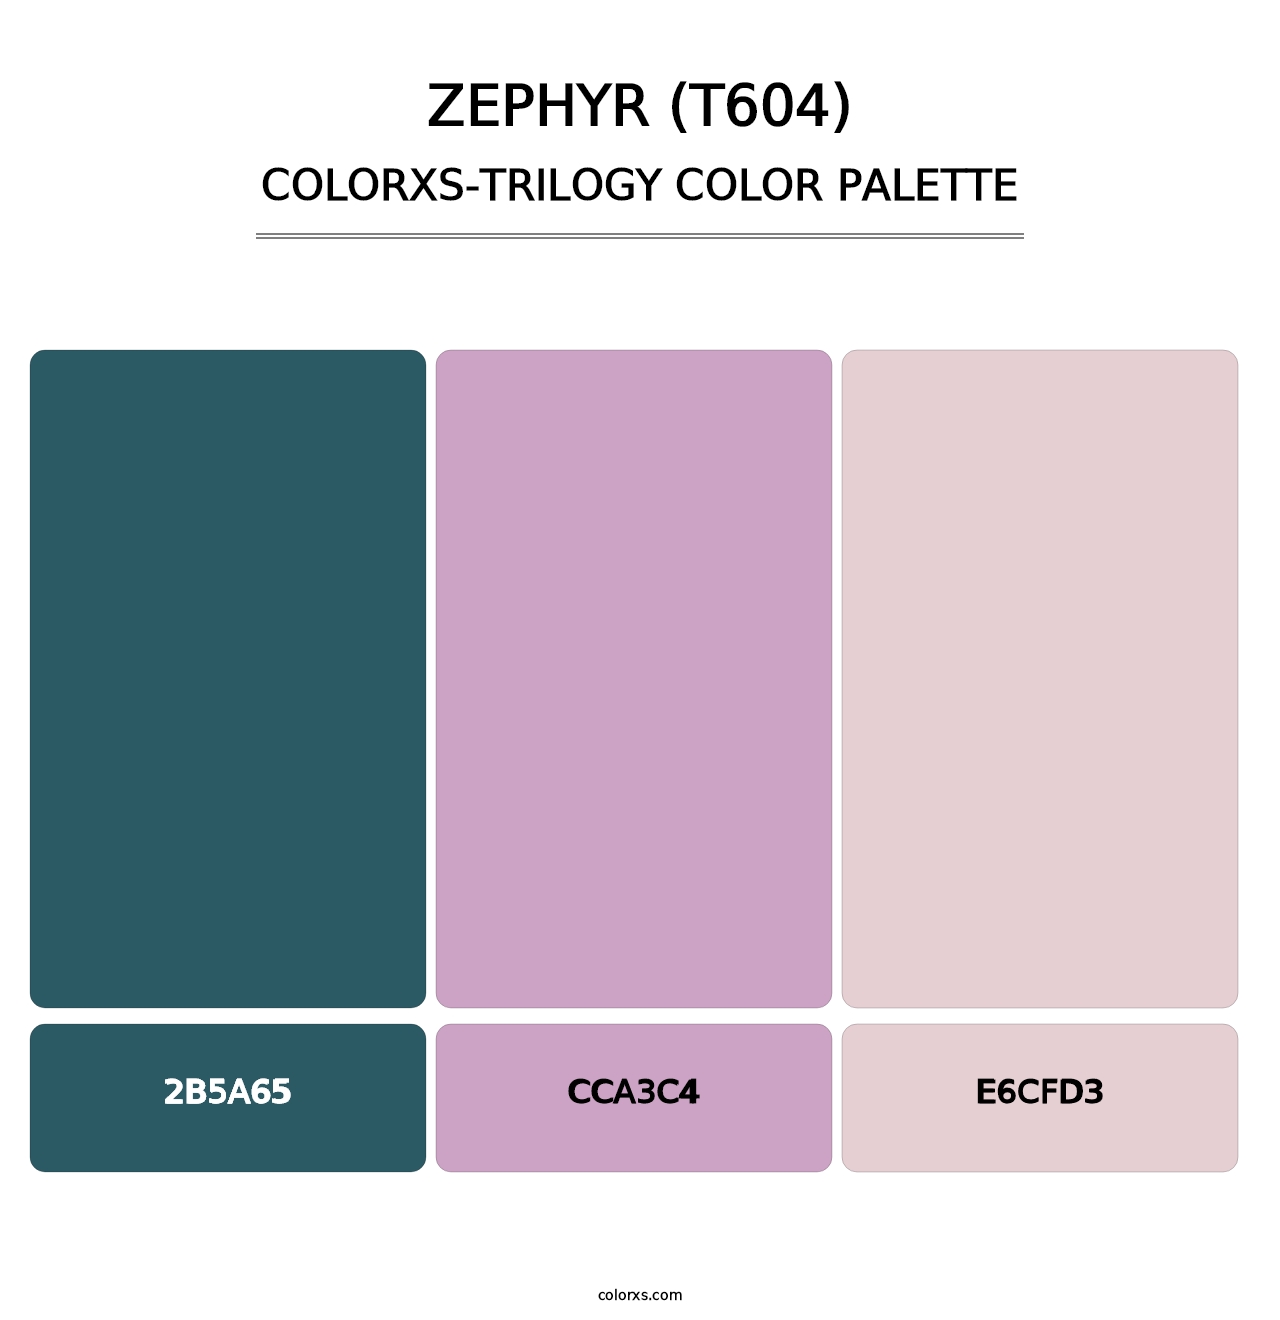 Zephyr (T604) - Colorxs Trilogy Palette